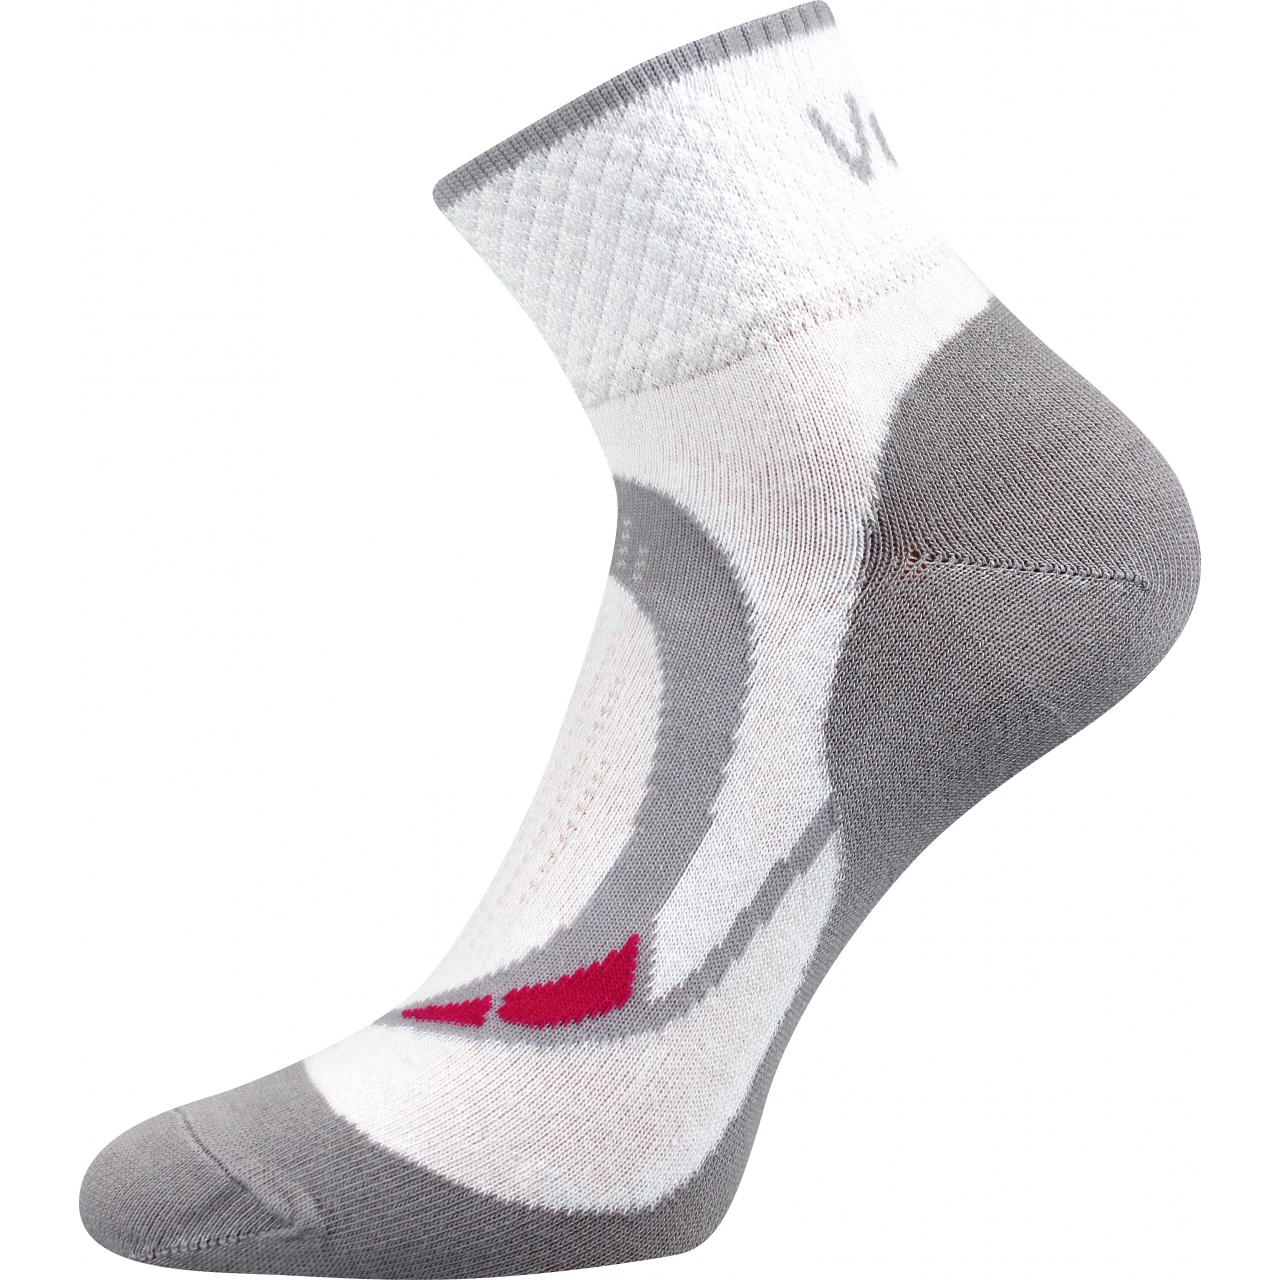 Ponožky dámské sportovní Voxx Lira - bílé, 35-38